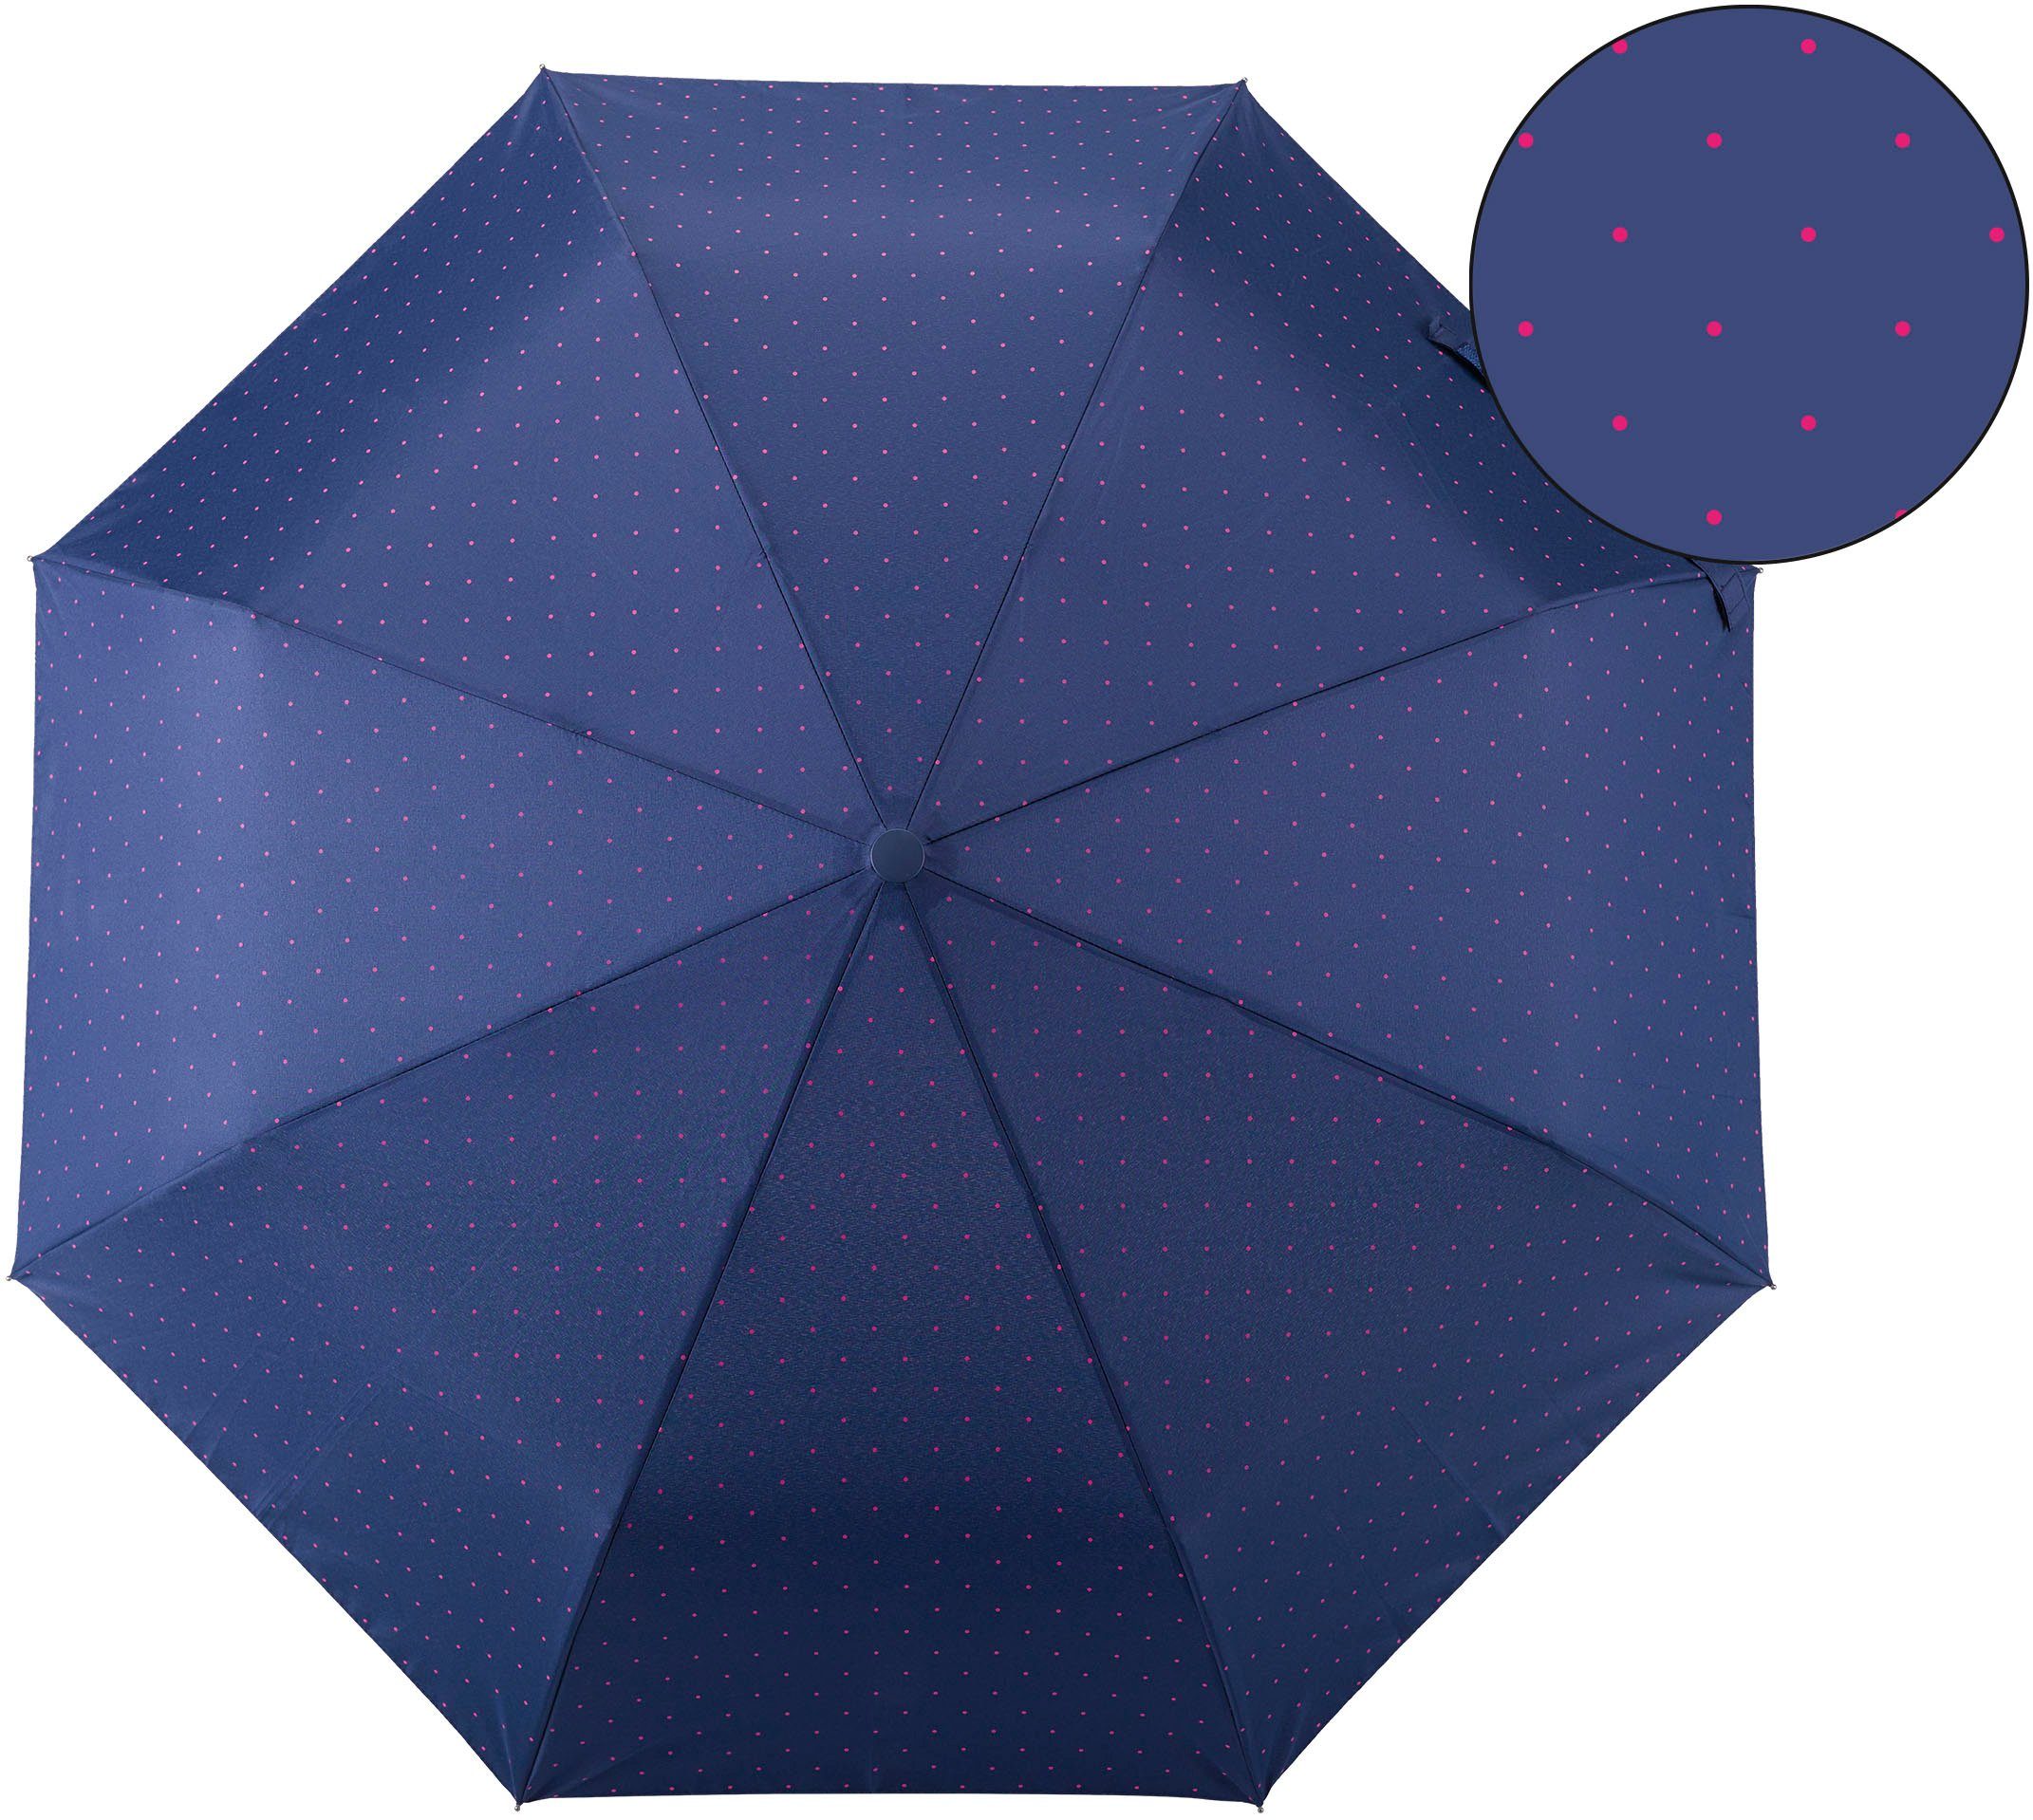 EuroSCHIRM® Taschenregenschirm marine, pink Punkte Umwelt-Taschenschirm